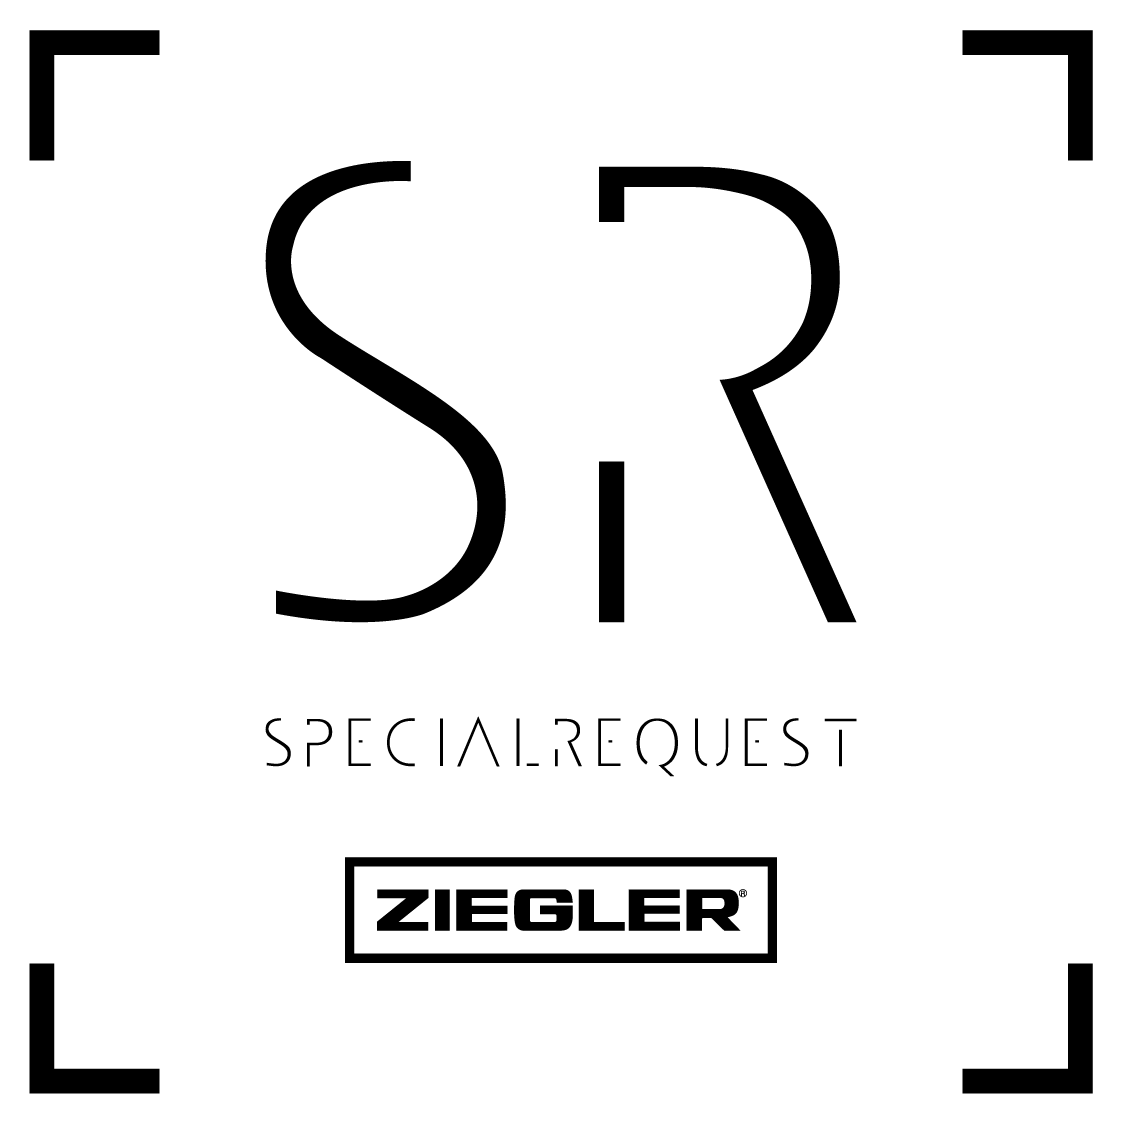 Special Request by Ziegler, le service Premium du groupe ZIEGLER, est maintenant disponible !